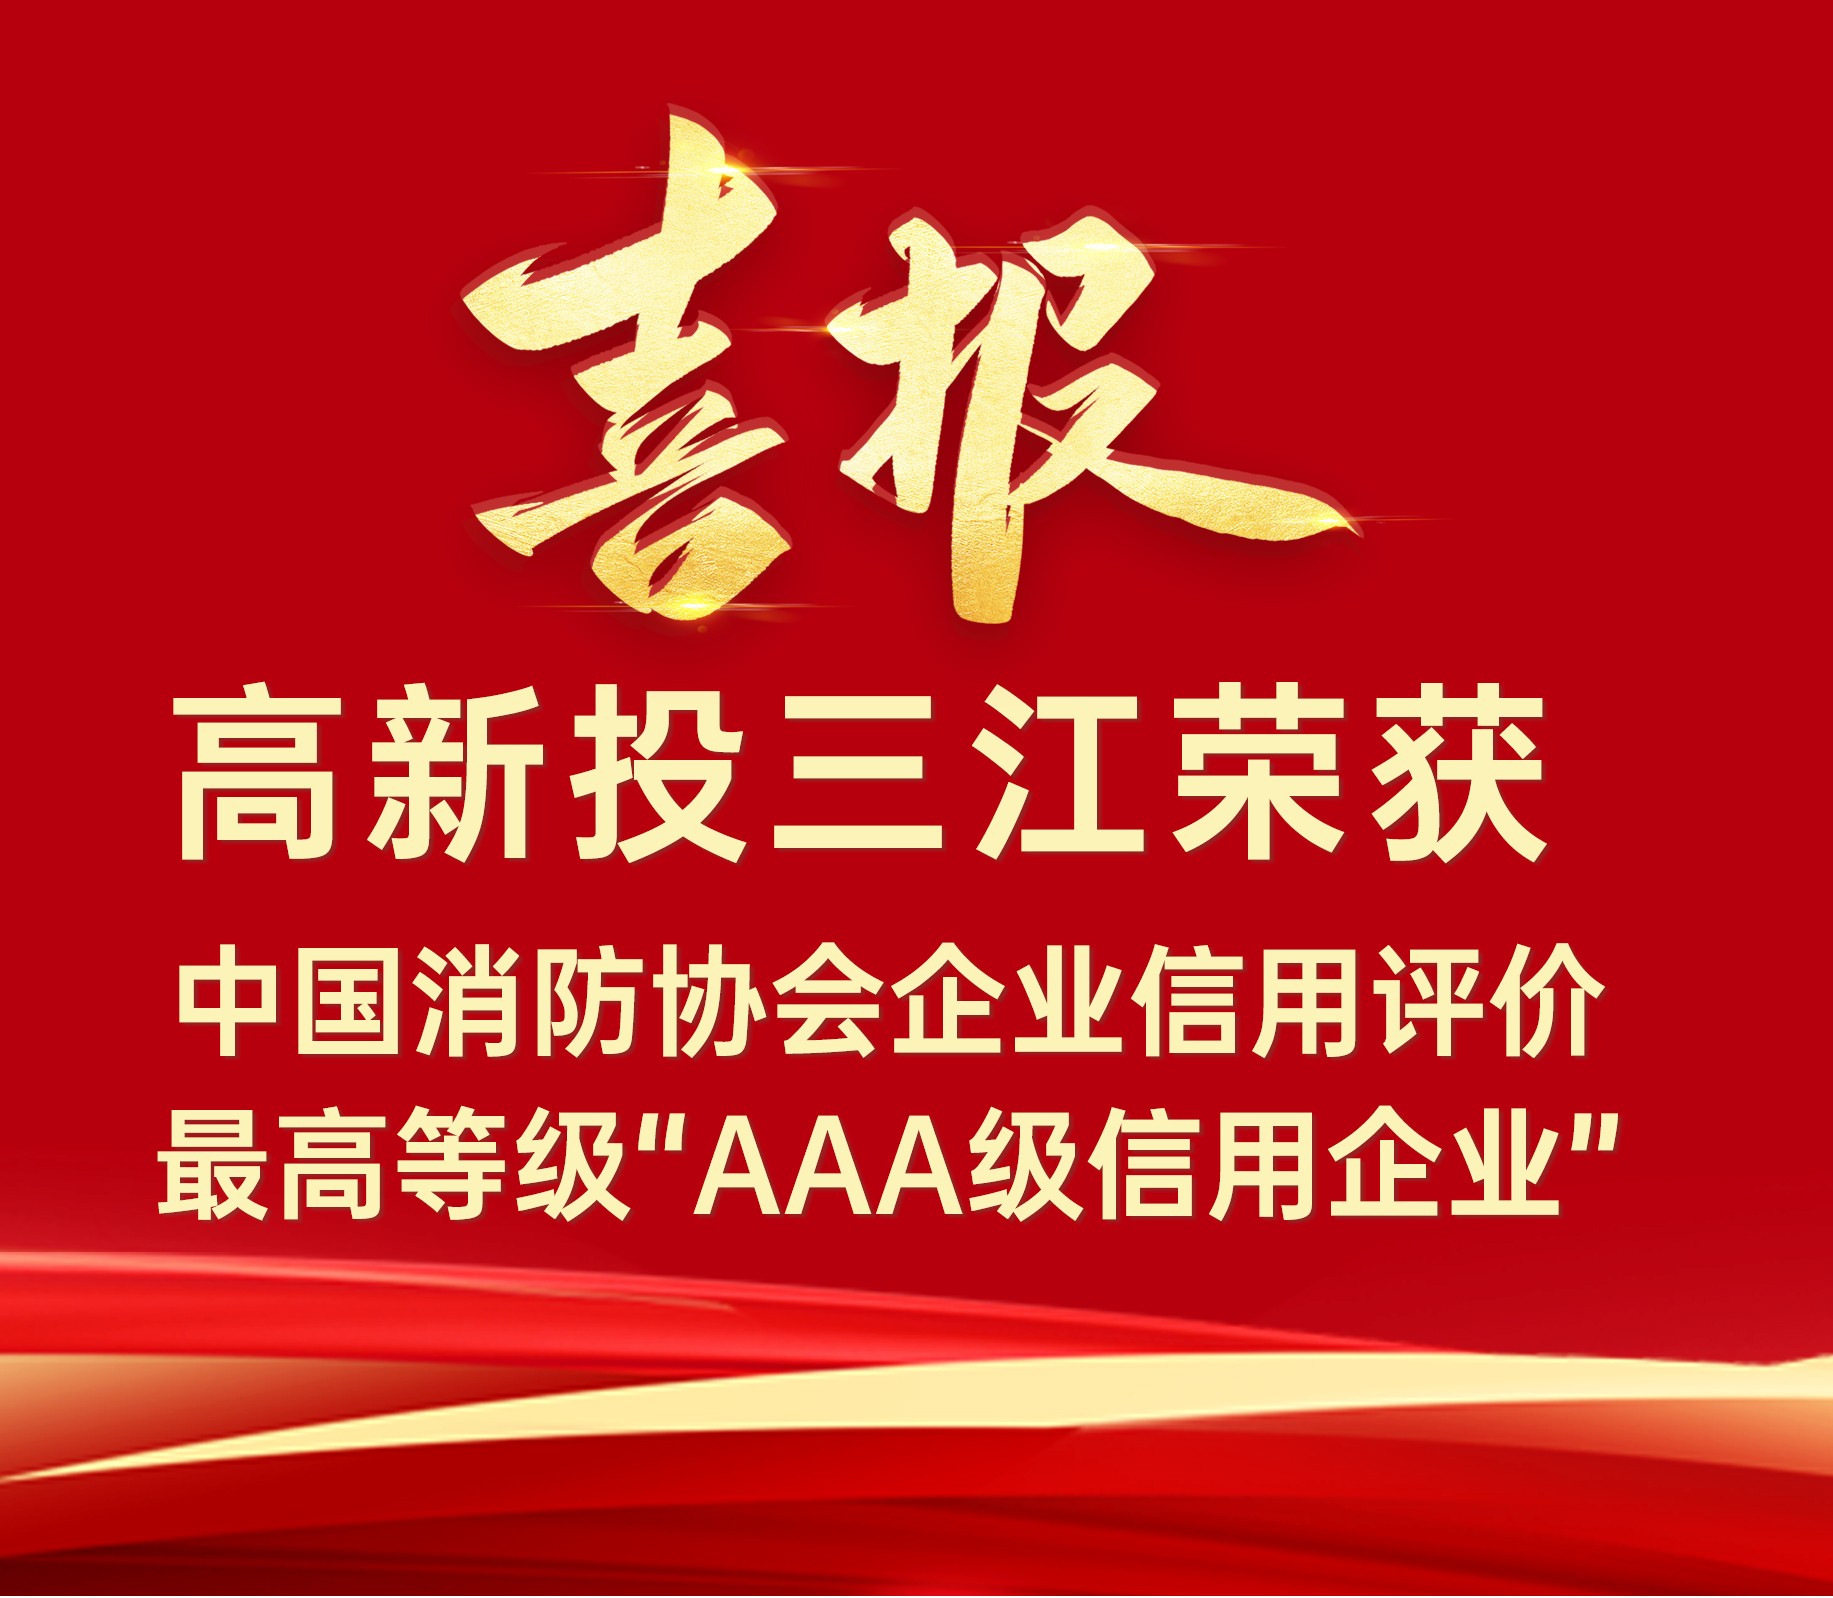 铁盘神算4778连续荣获中国消防协会企业信用评价最高等级“AAA级信用企业”